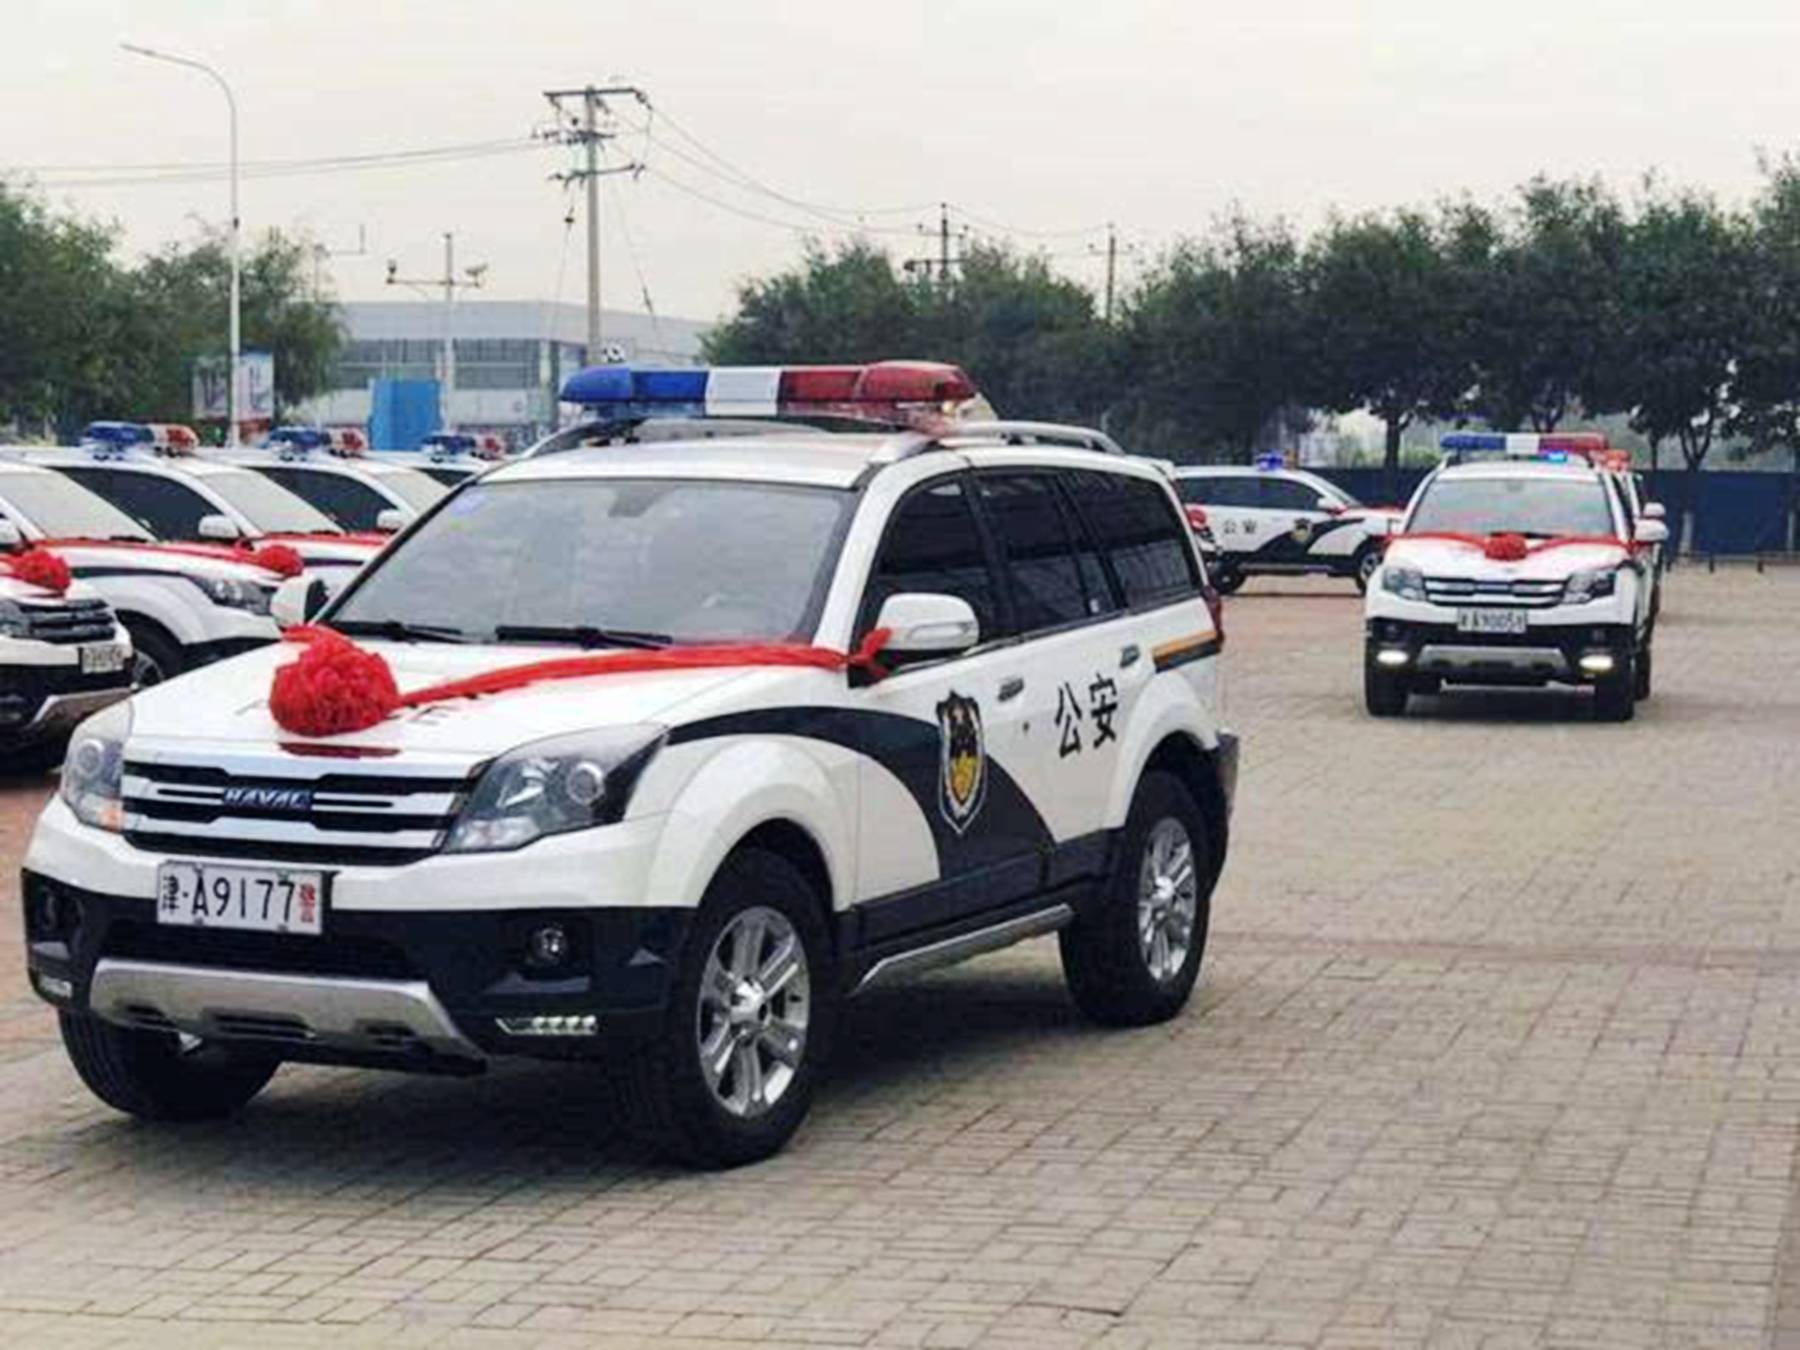 中国警车大换血统统淘汰丰田大众新车才彰显大国风范